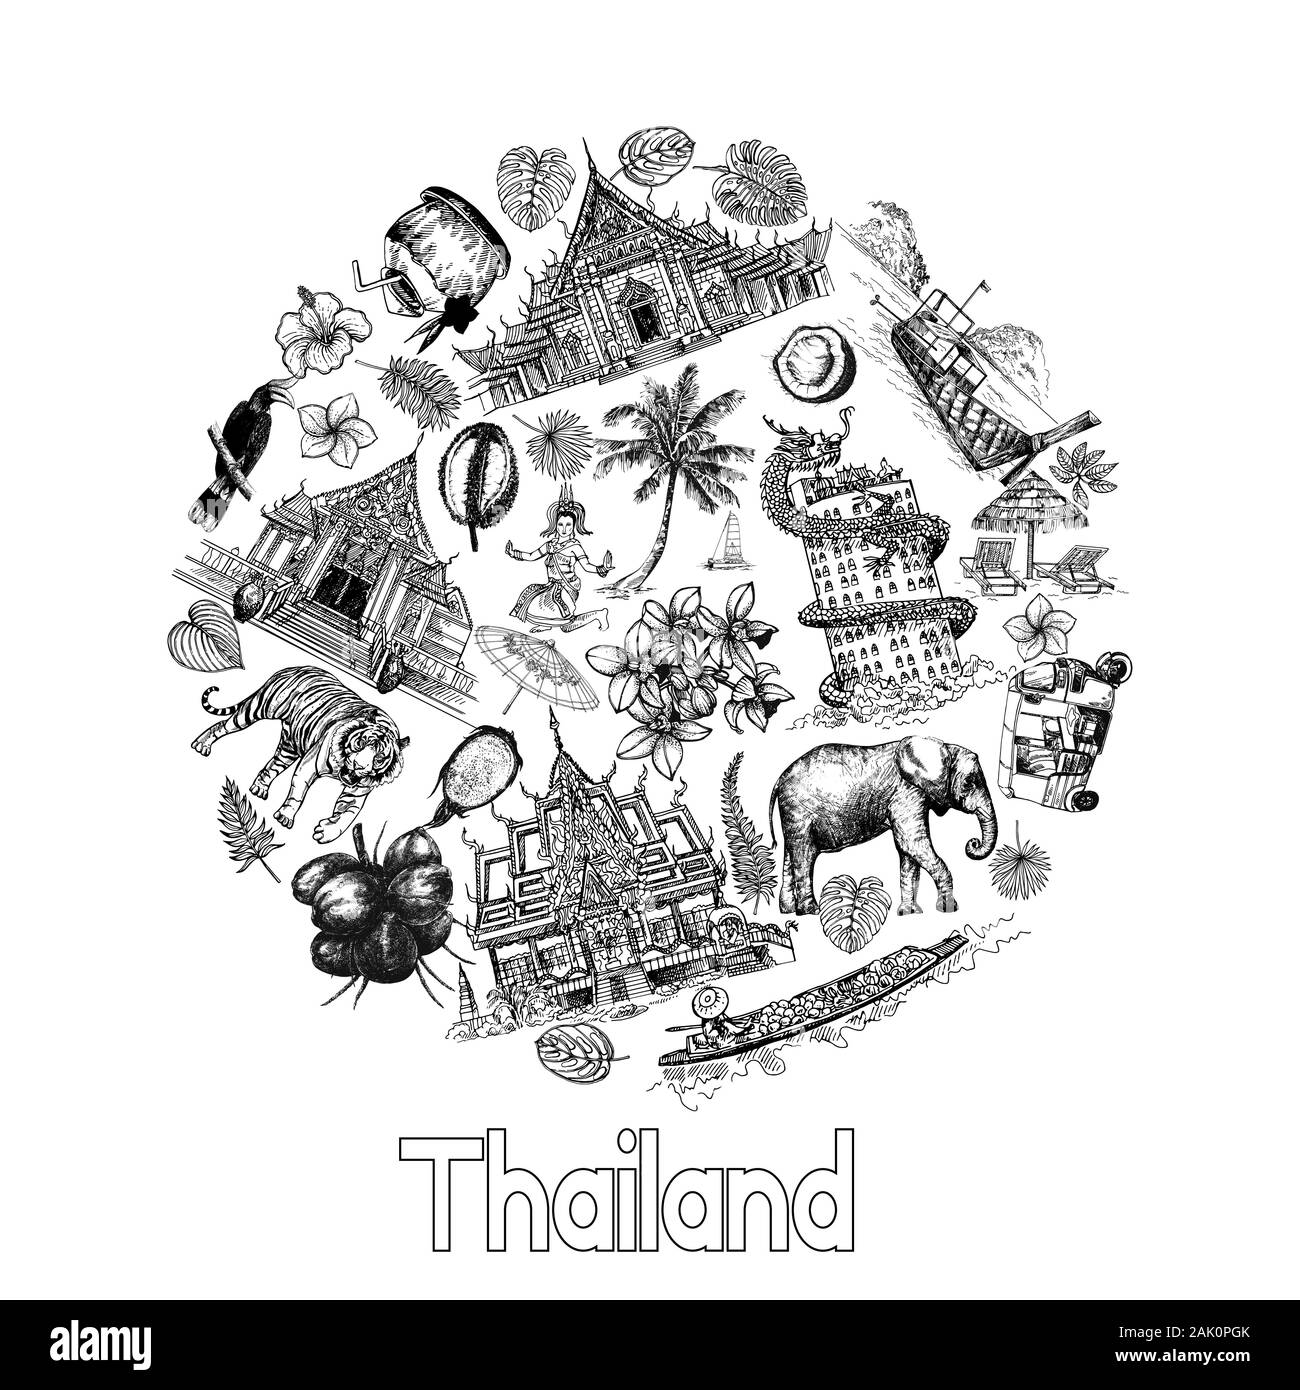 Poster Karte Zusammensetzung von Hand gezeichnete Skizze stil Thailand ähnliche Objekte auf weißem Hintergrund. Vector Illustration. Stock Vektor